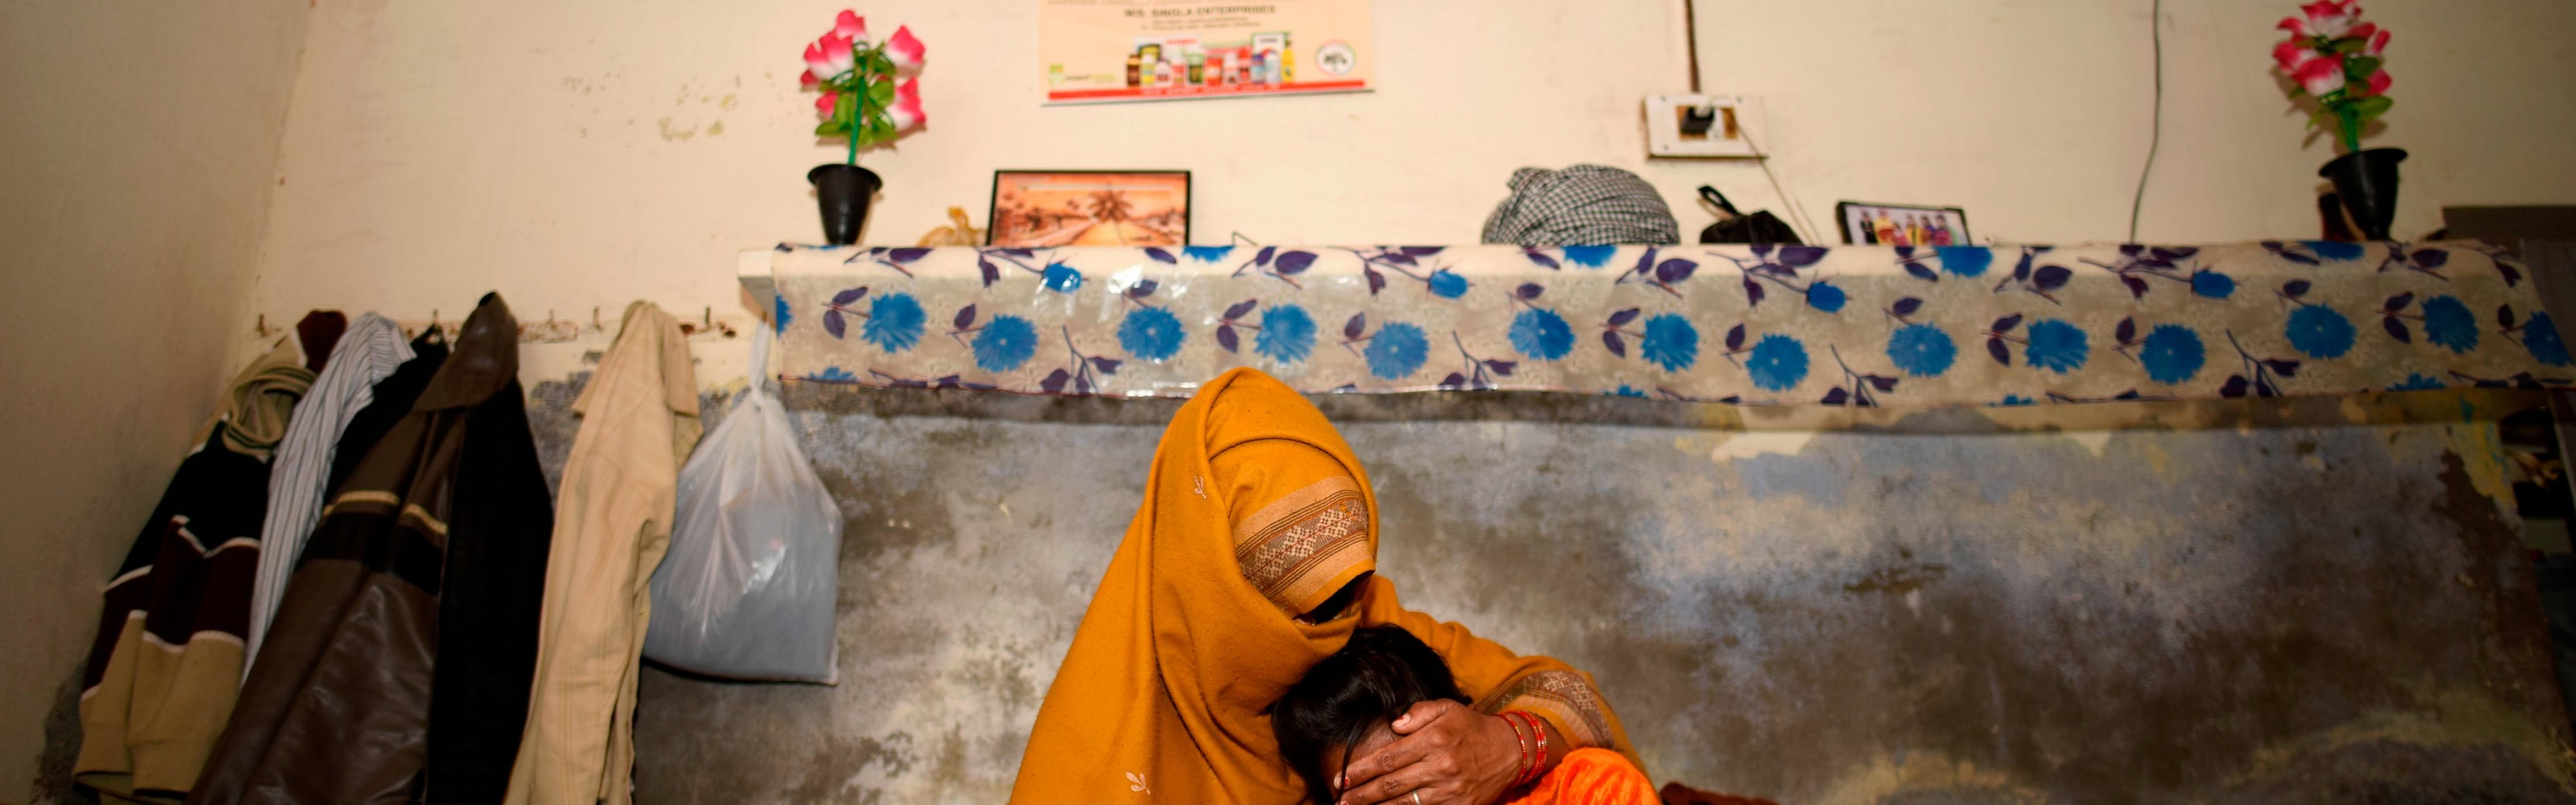 String of brutal rapes shocks India | CNN